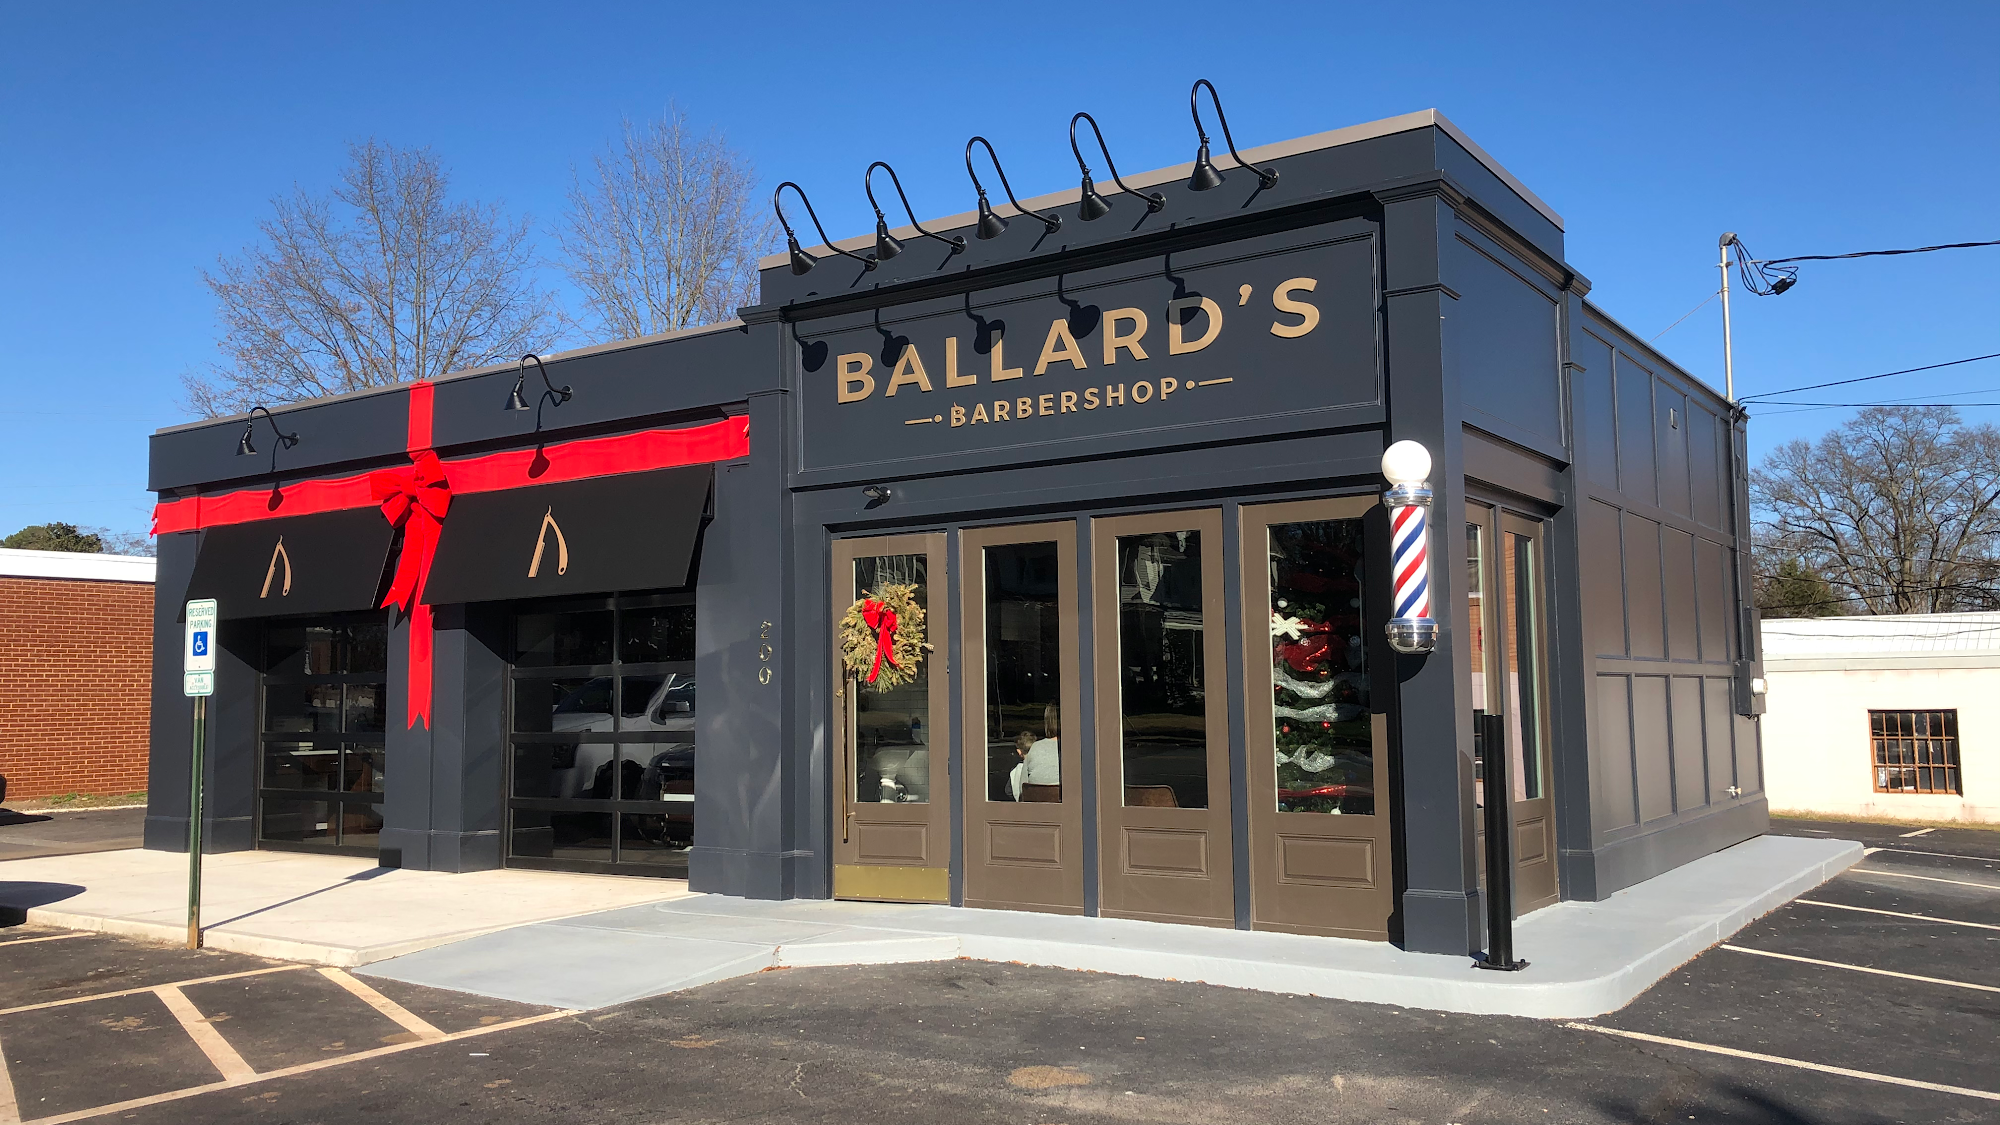 Ballard's Barbershop